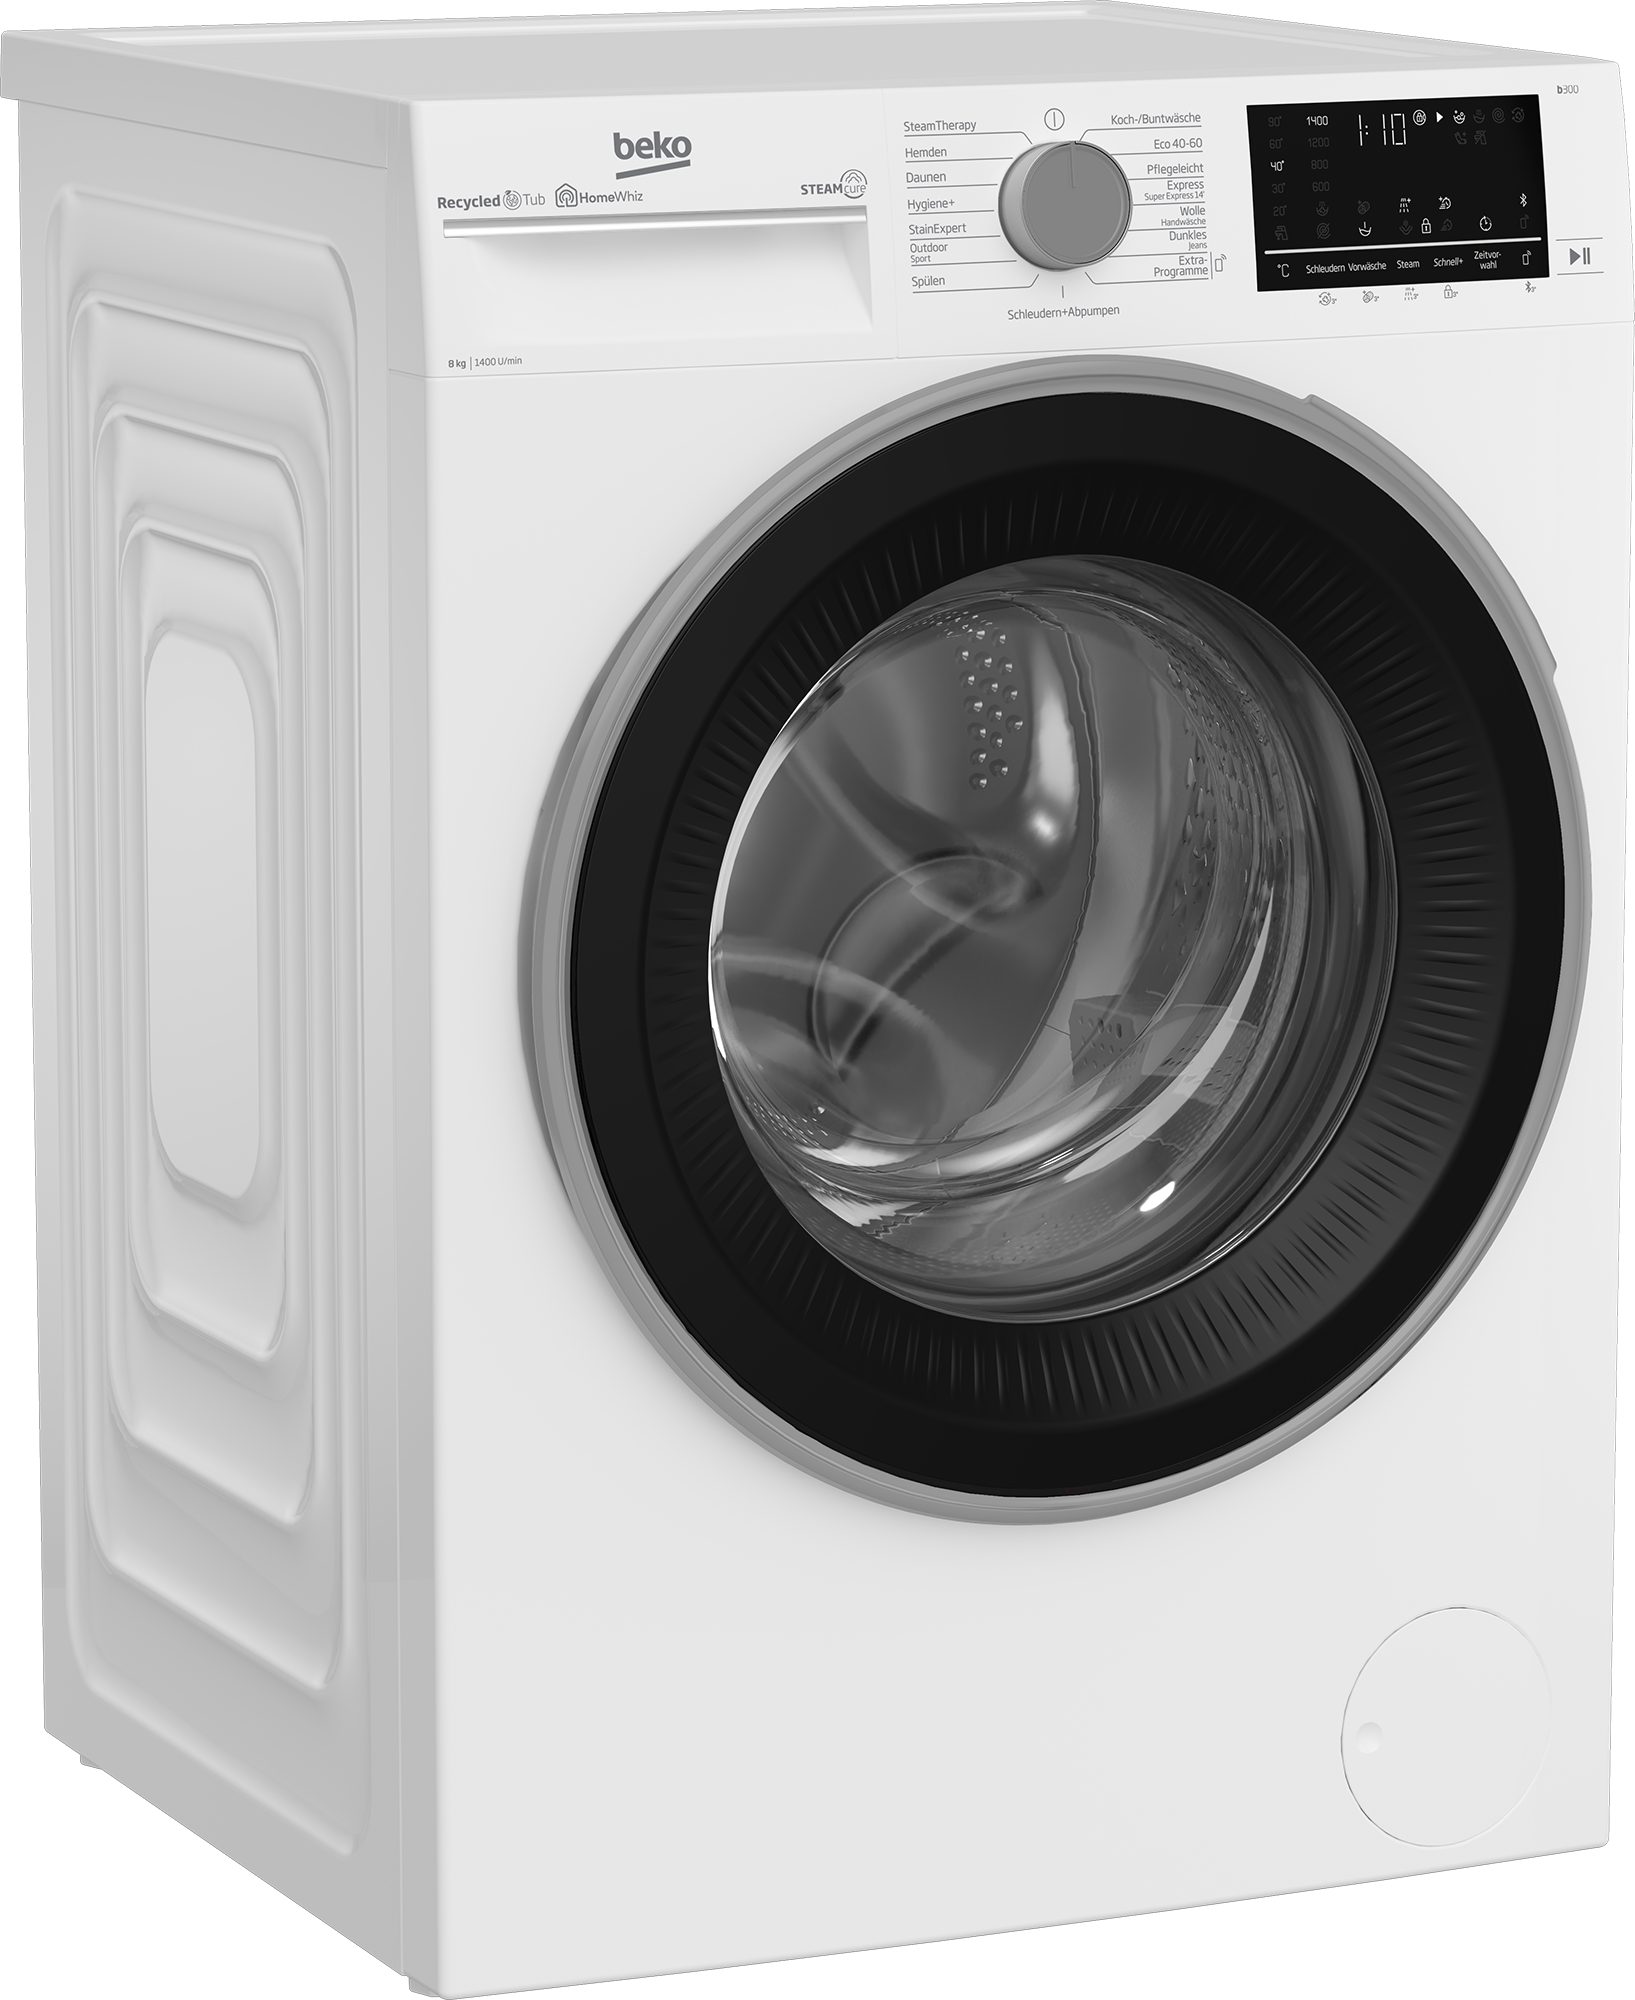 BEKO Waschmaschine 8 b300 kg, U/min, 1400 SteamCure 99% - allergenfrei B3WFU58415W1